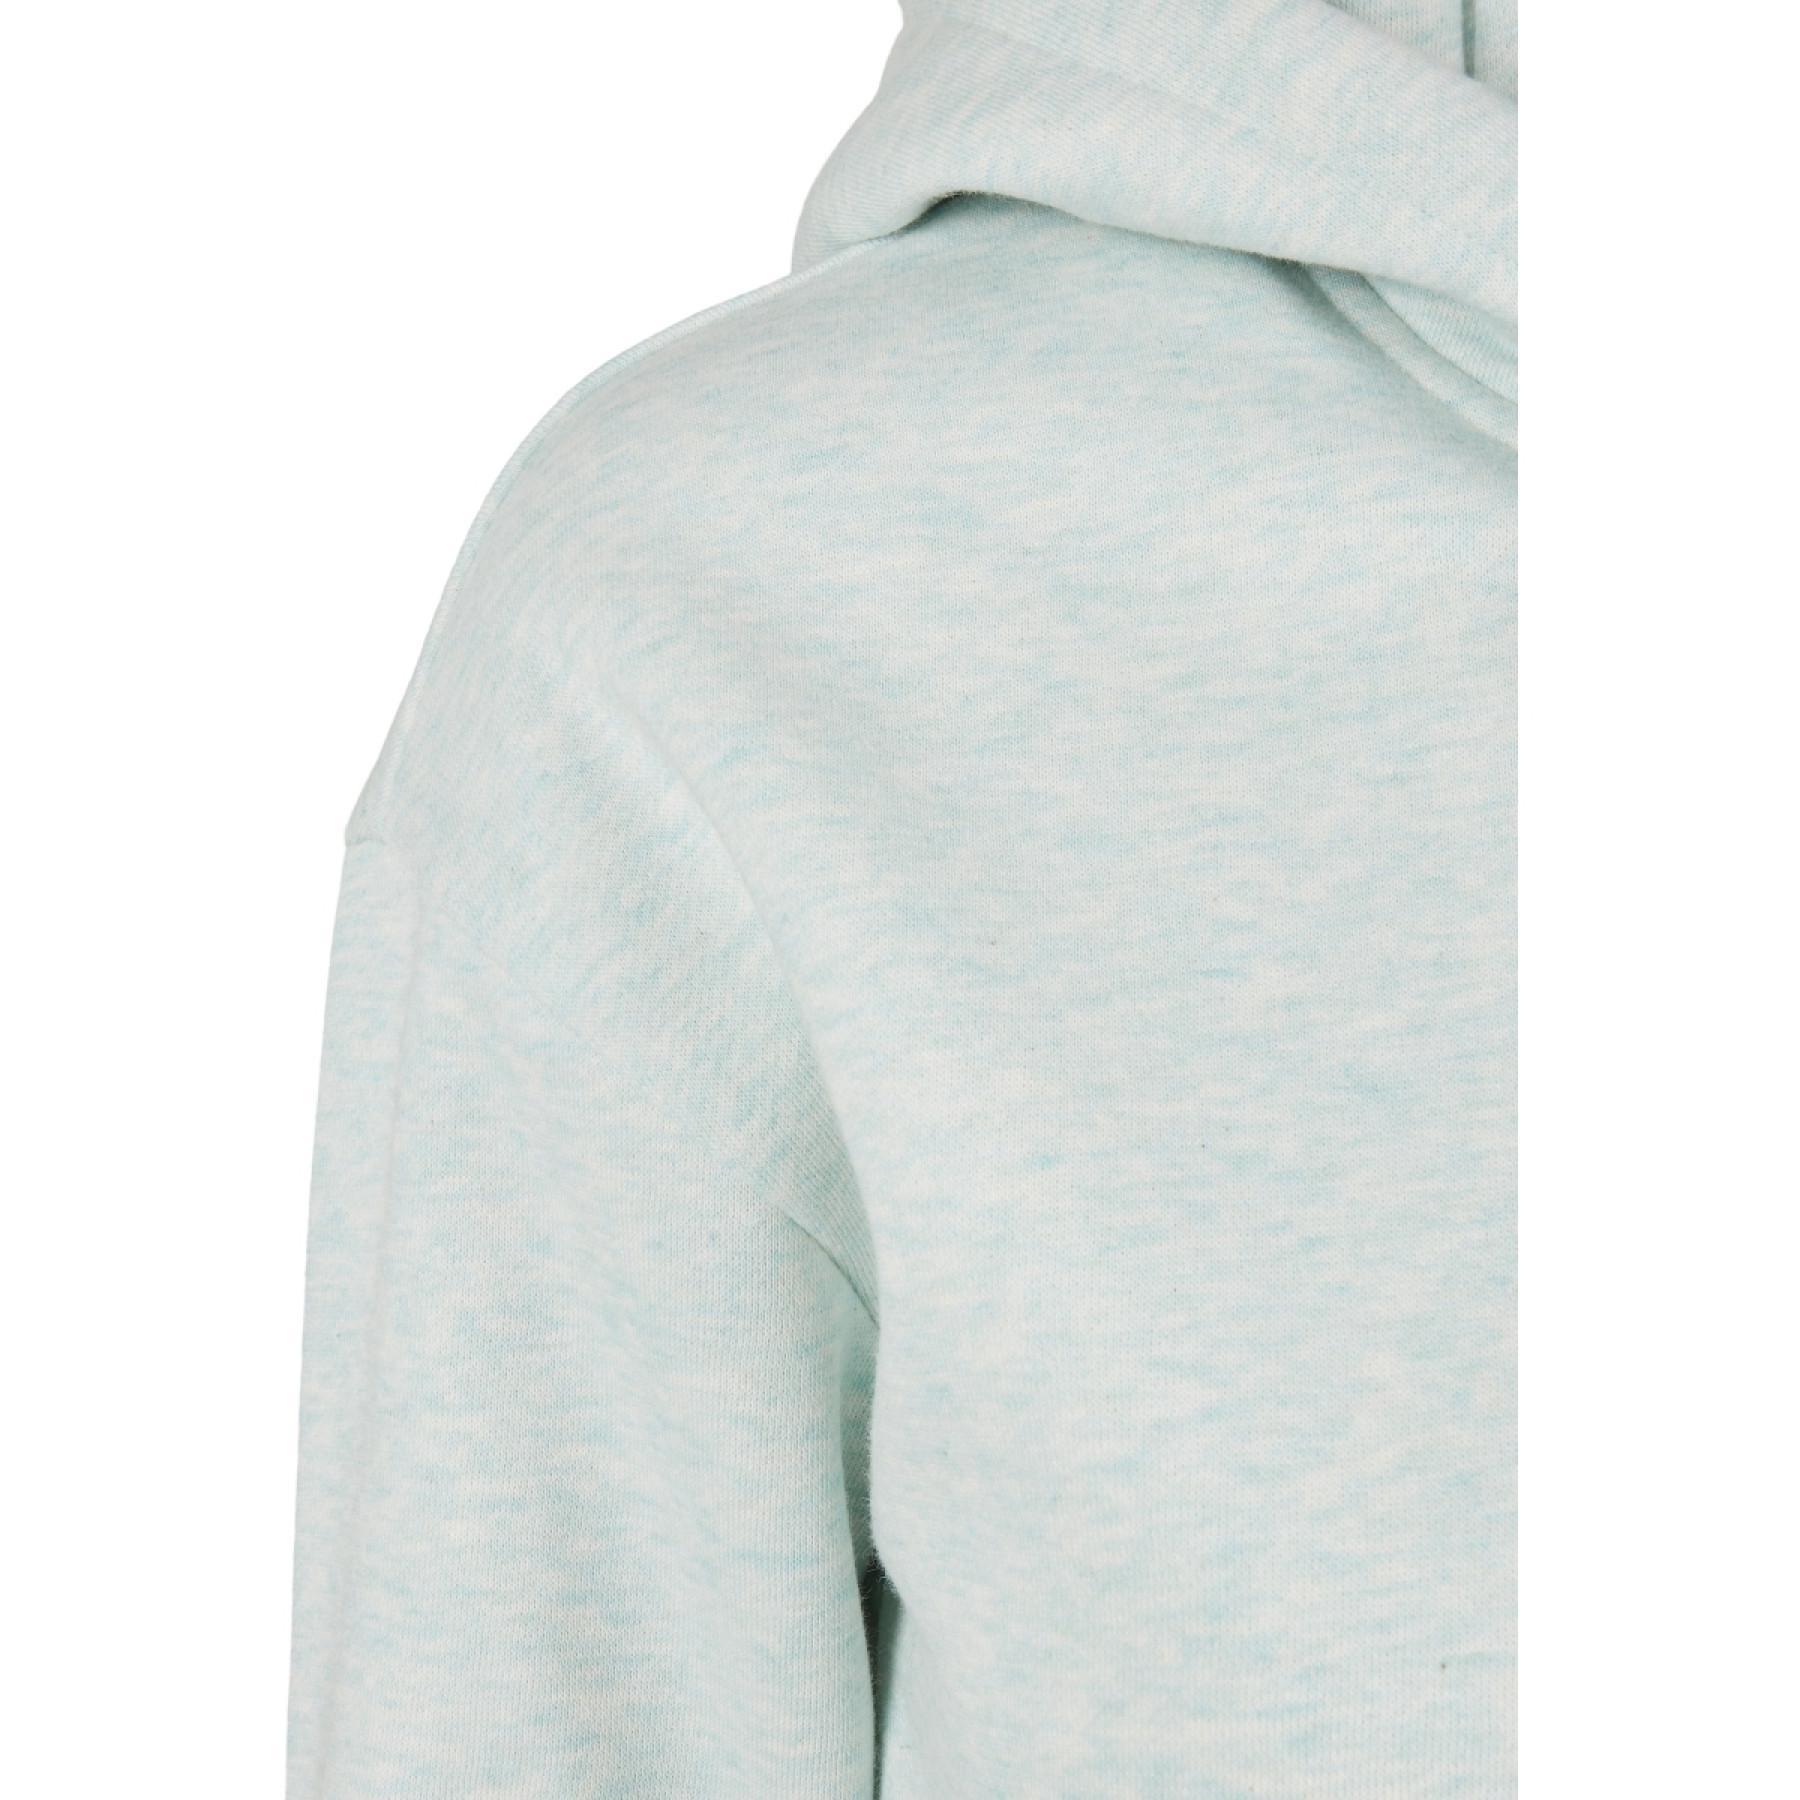 Sweatshirt à capuche femme Urban Classics color melange-grandes tailles